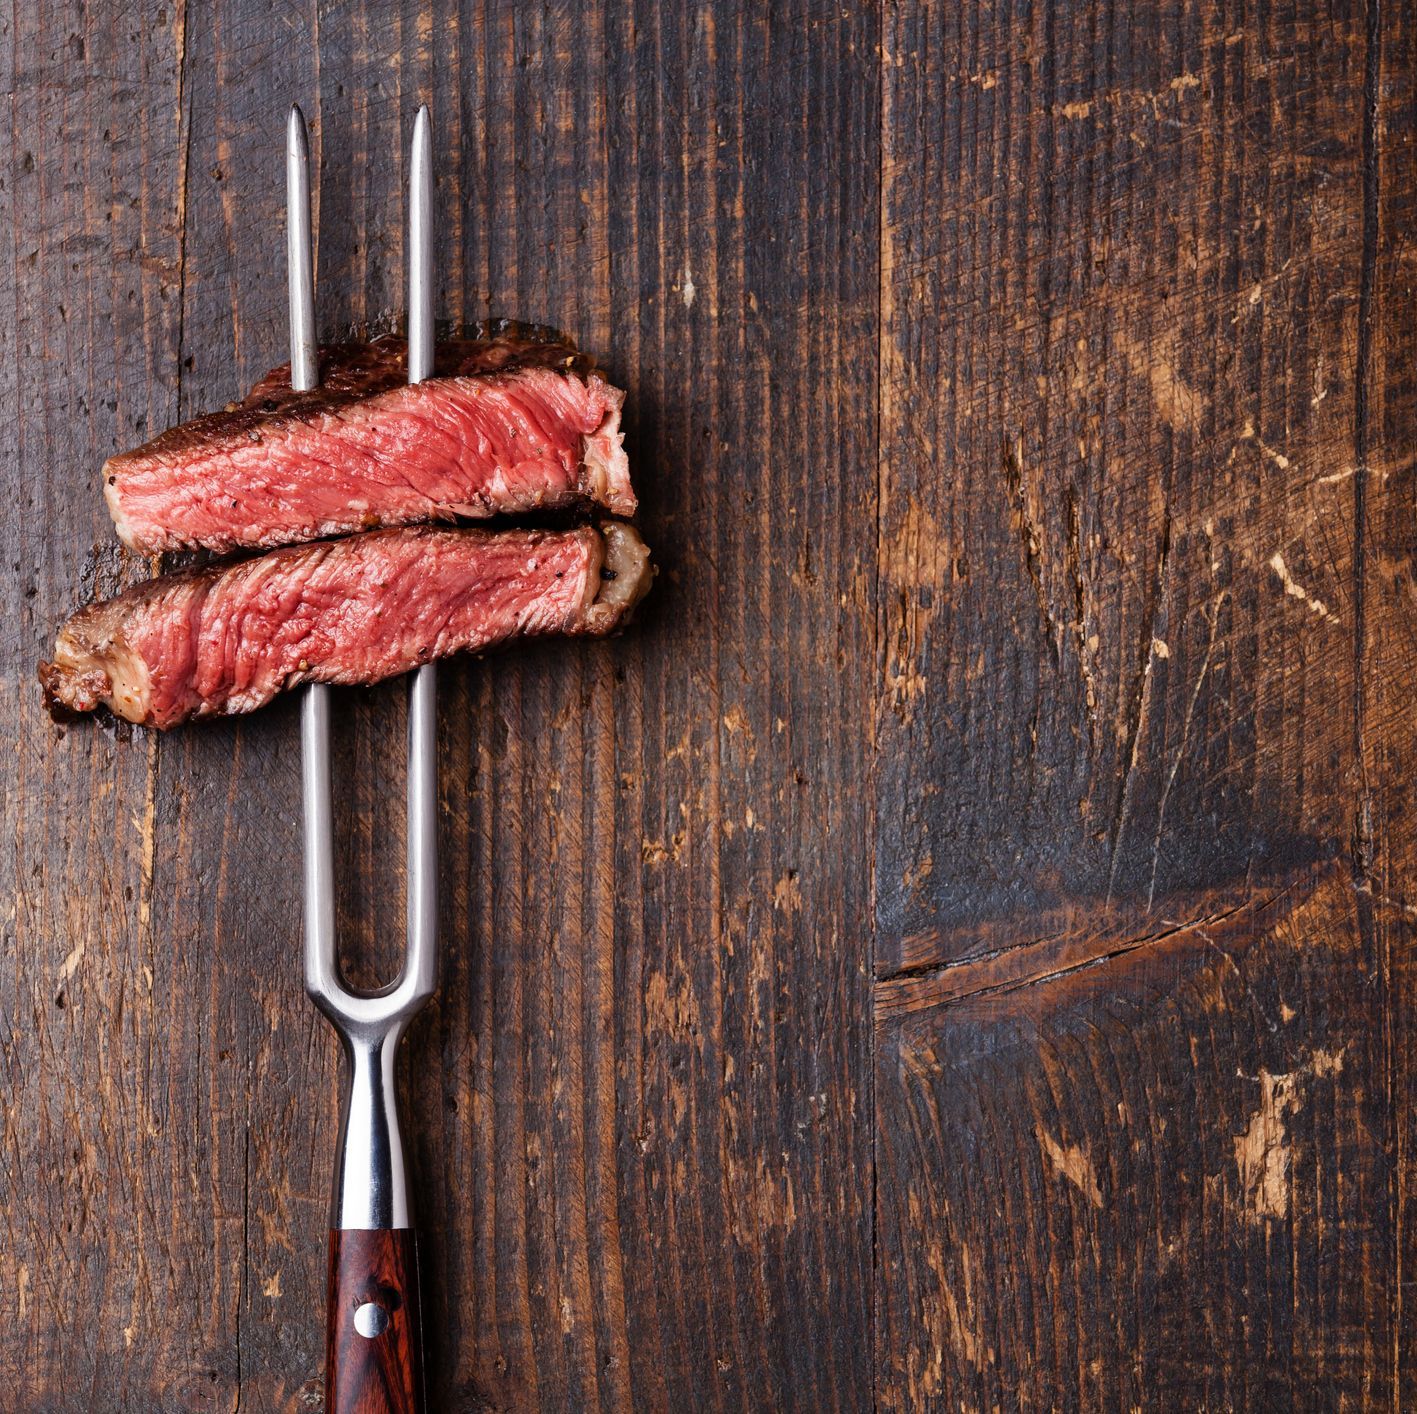 Slices of Steak Ribeye on meat fork